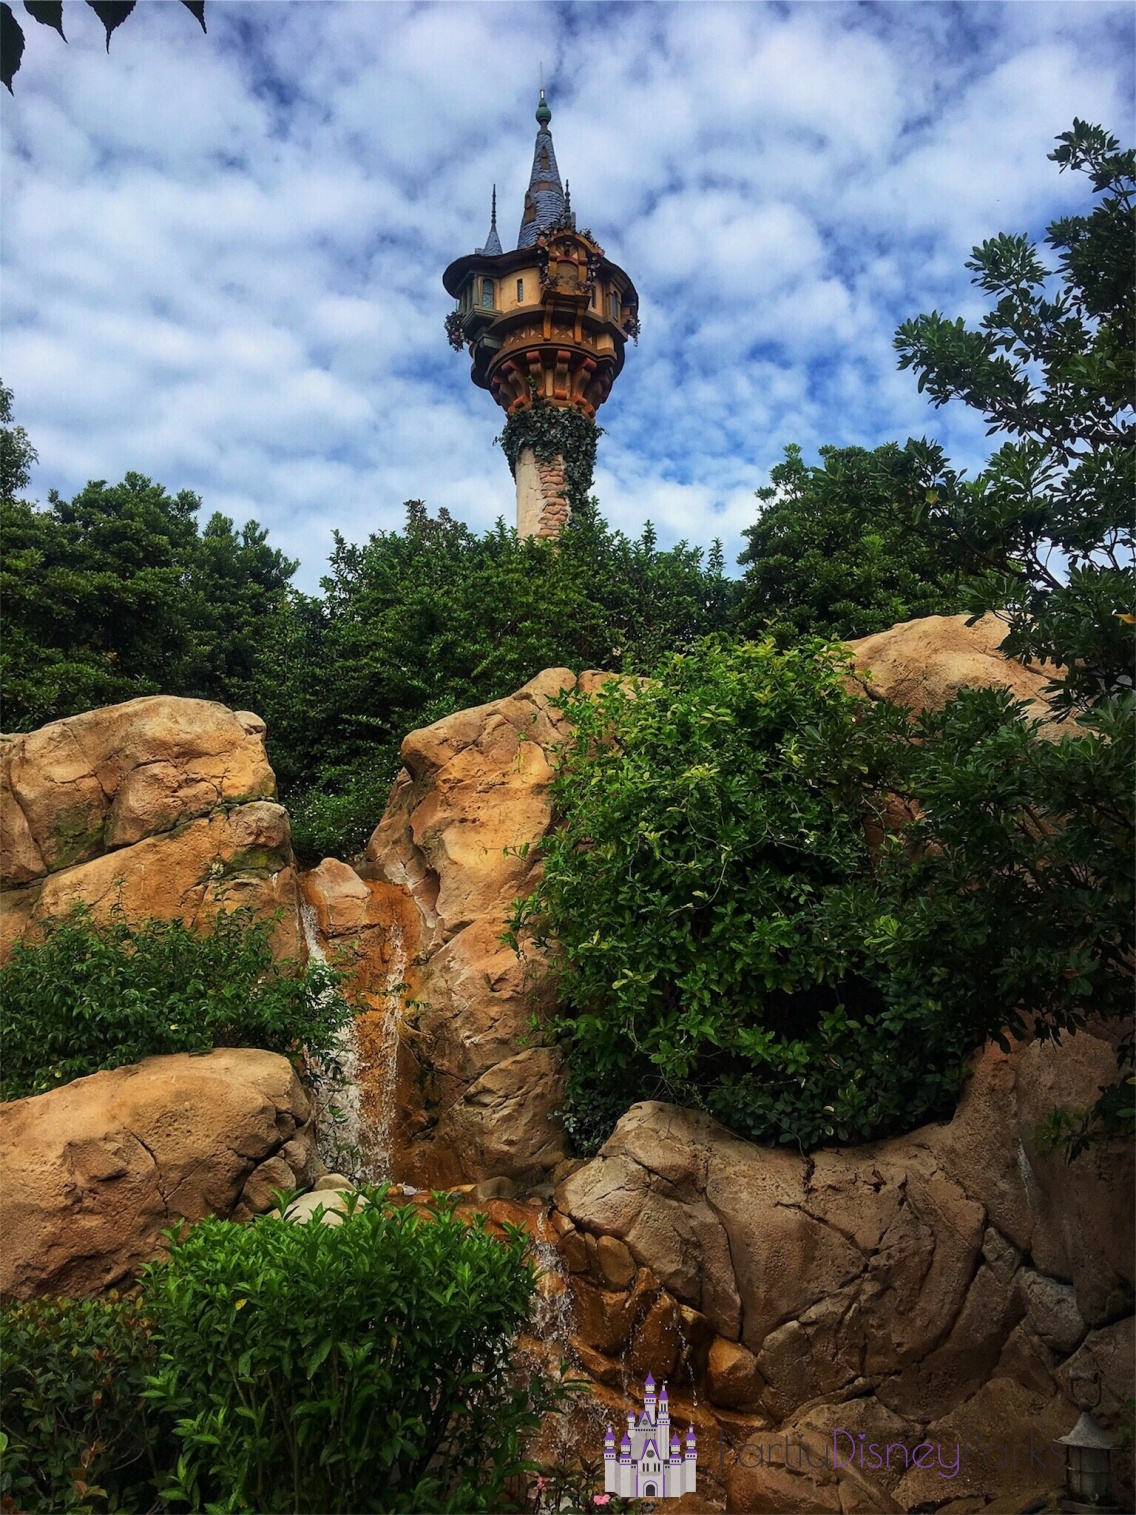 torre del reino mágico enredado de rapunzel